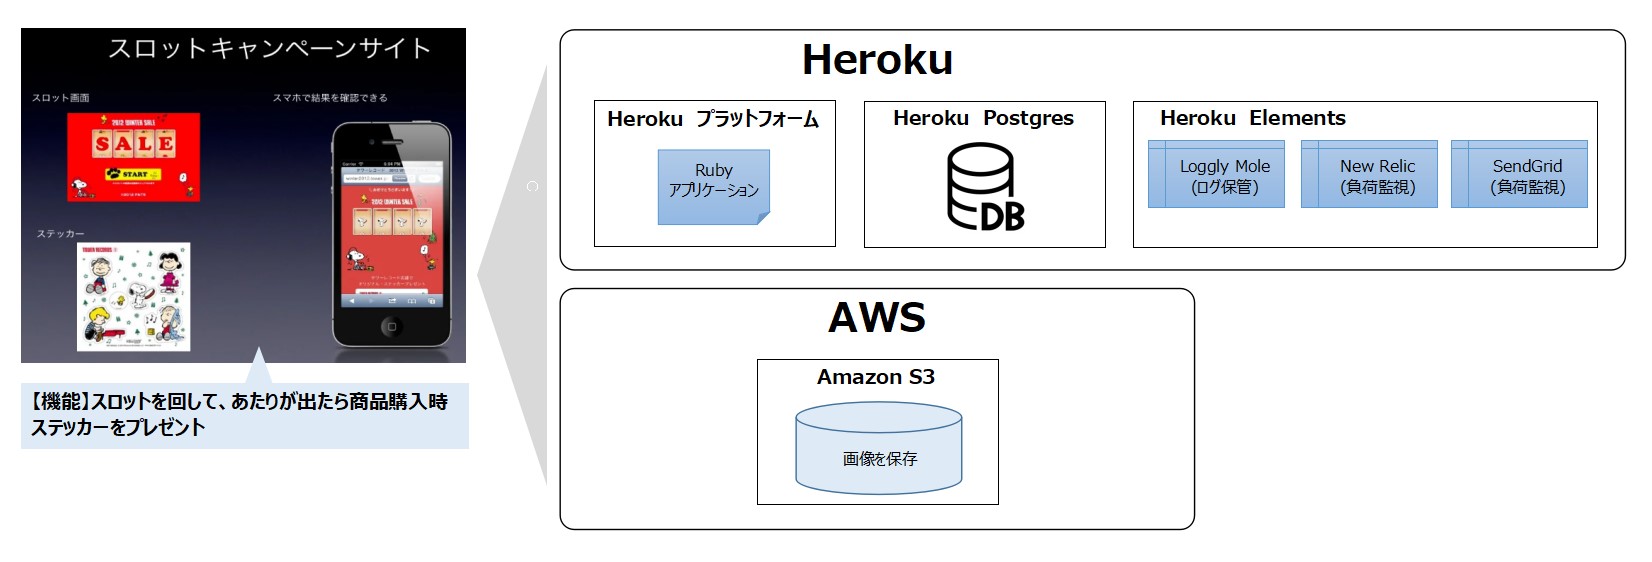 Herokuを企業のキャンペーン向けサービスに利用した例